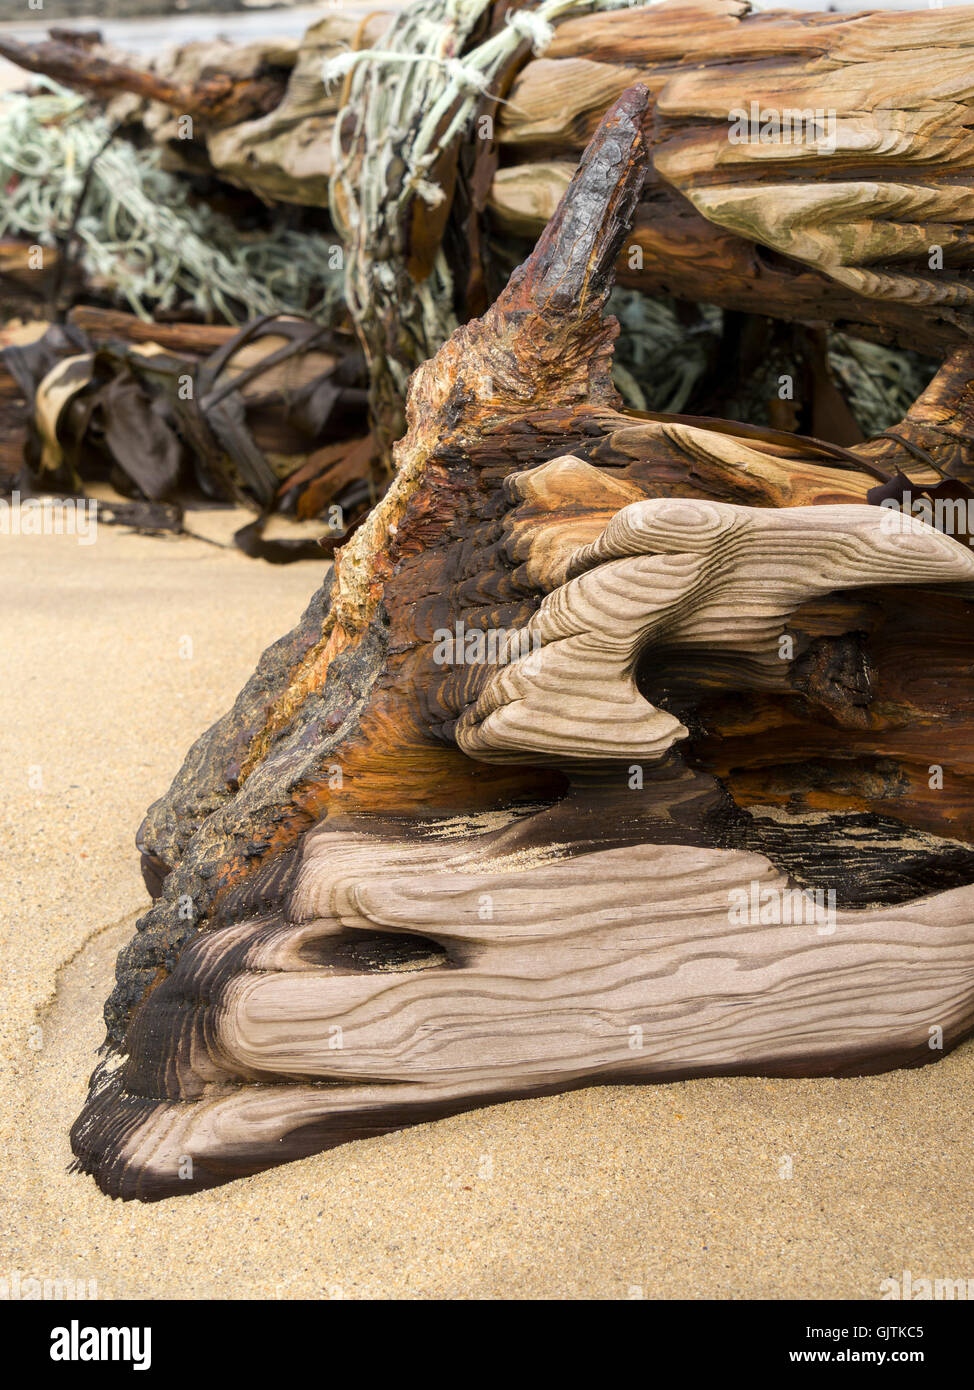 Sand verwitterte gewaschen und getragen Eiche Treibholz Hölzer auf alten Schiffswrack Strand, Balnahard Strand, Insel Colonsay, Schottland, Großbritannien. Stockfoto